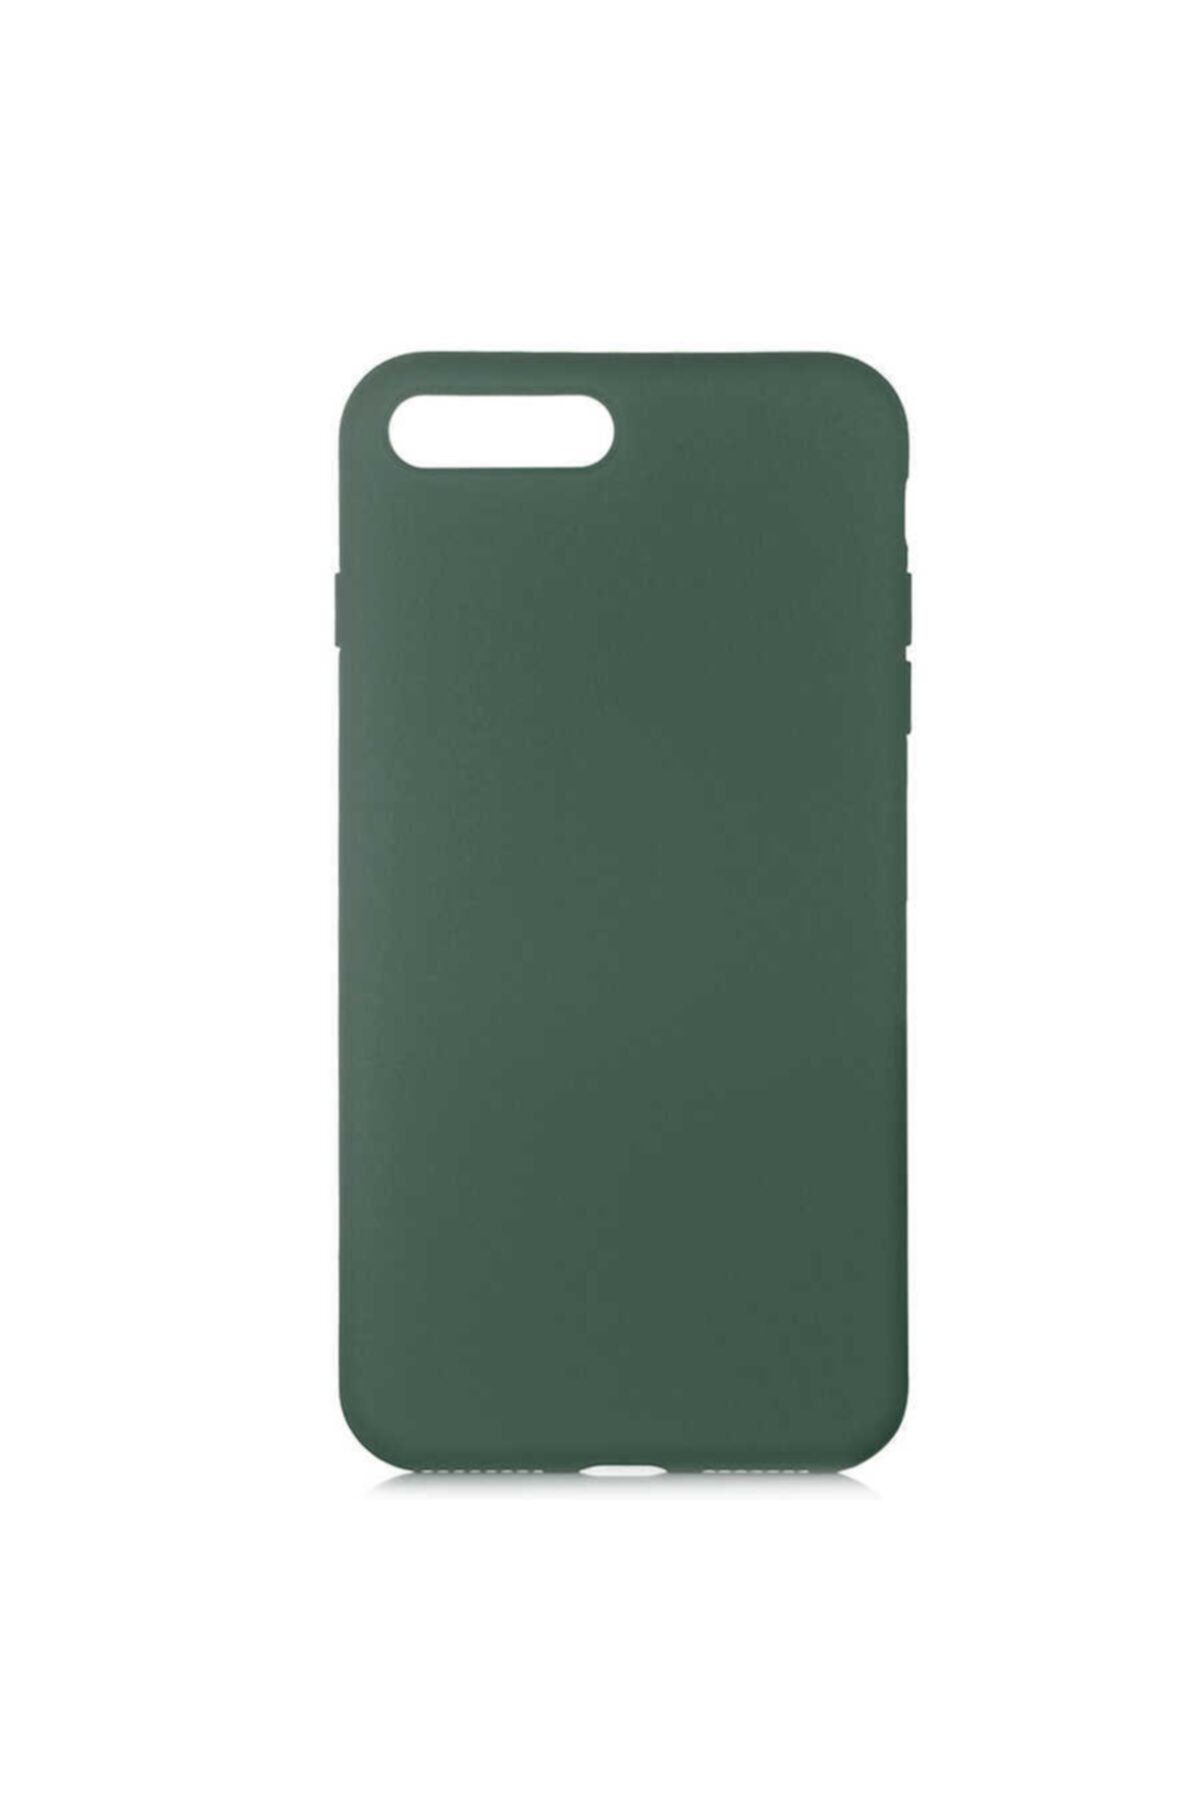 İzmirimStore Apple Iphone 8 Plus Kılıf Lansman Kapak -yeşil